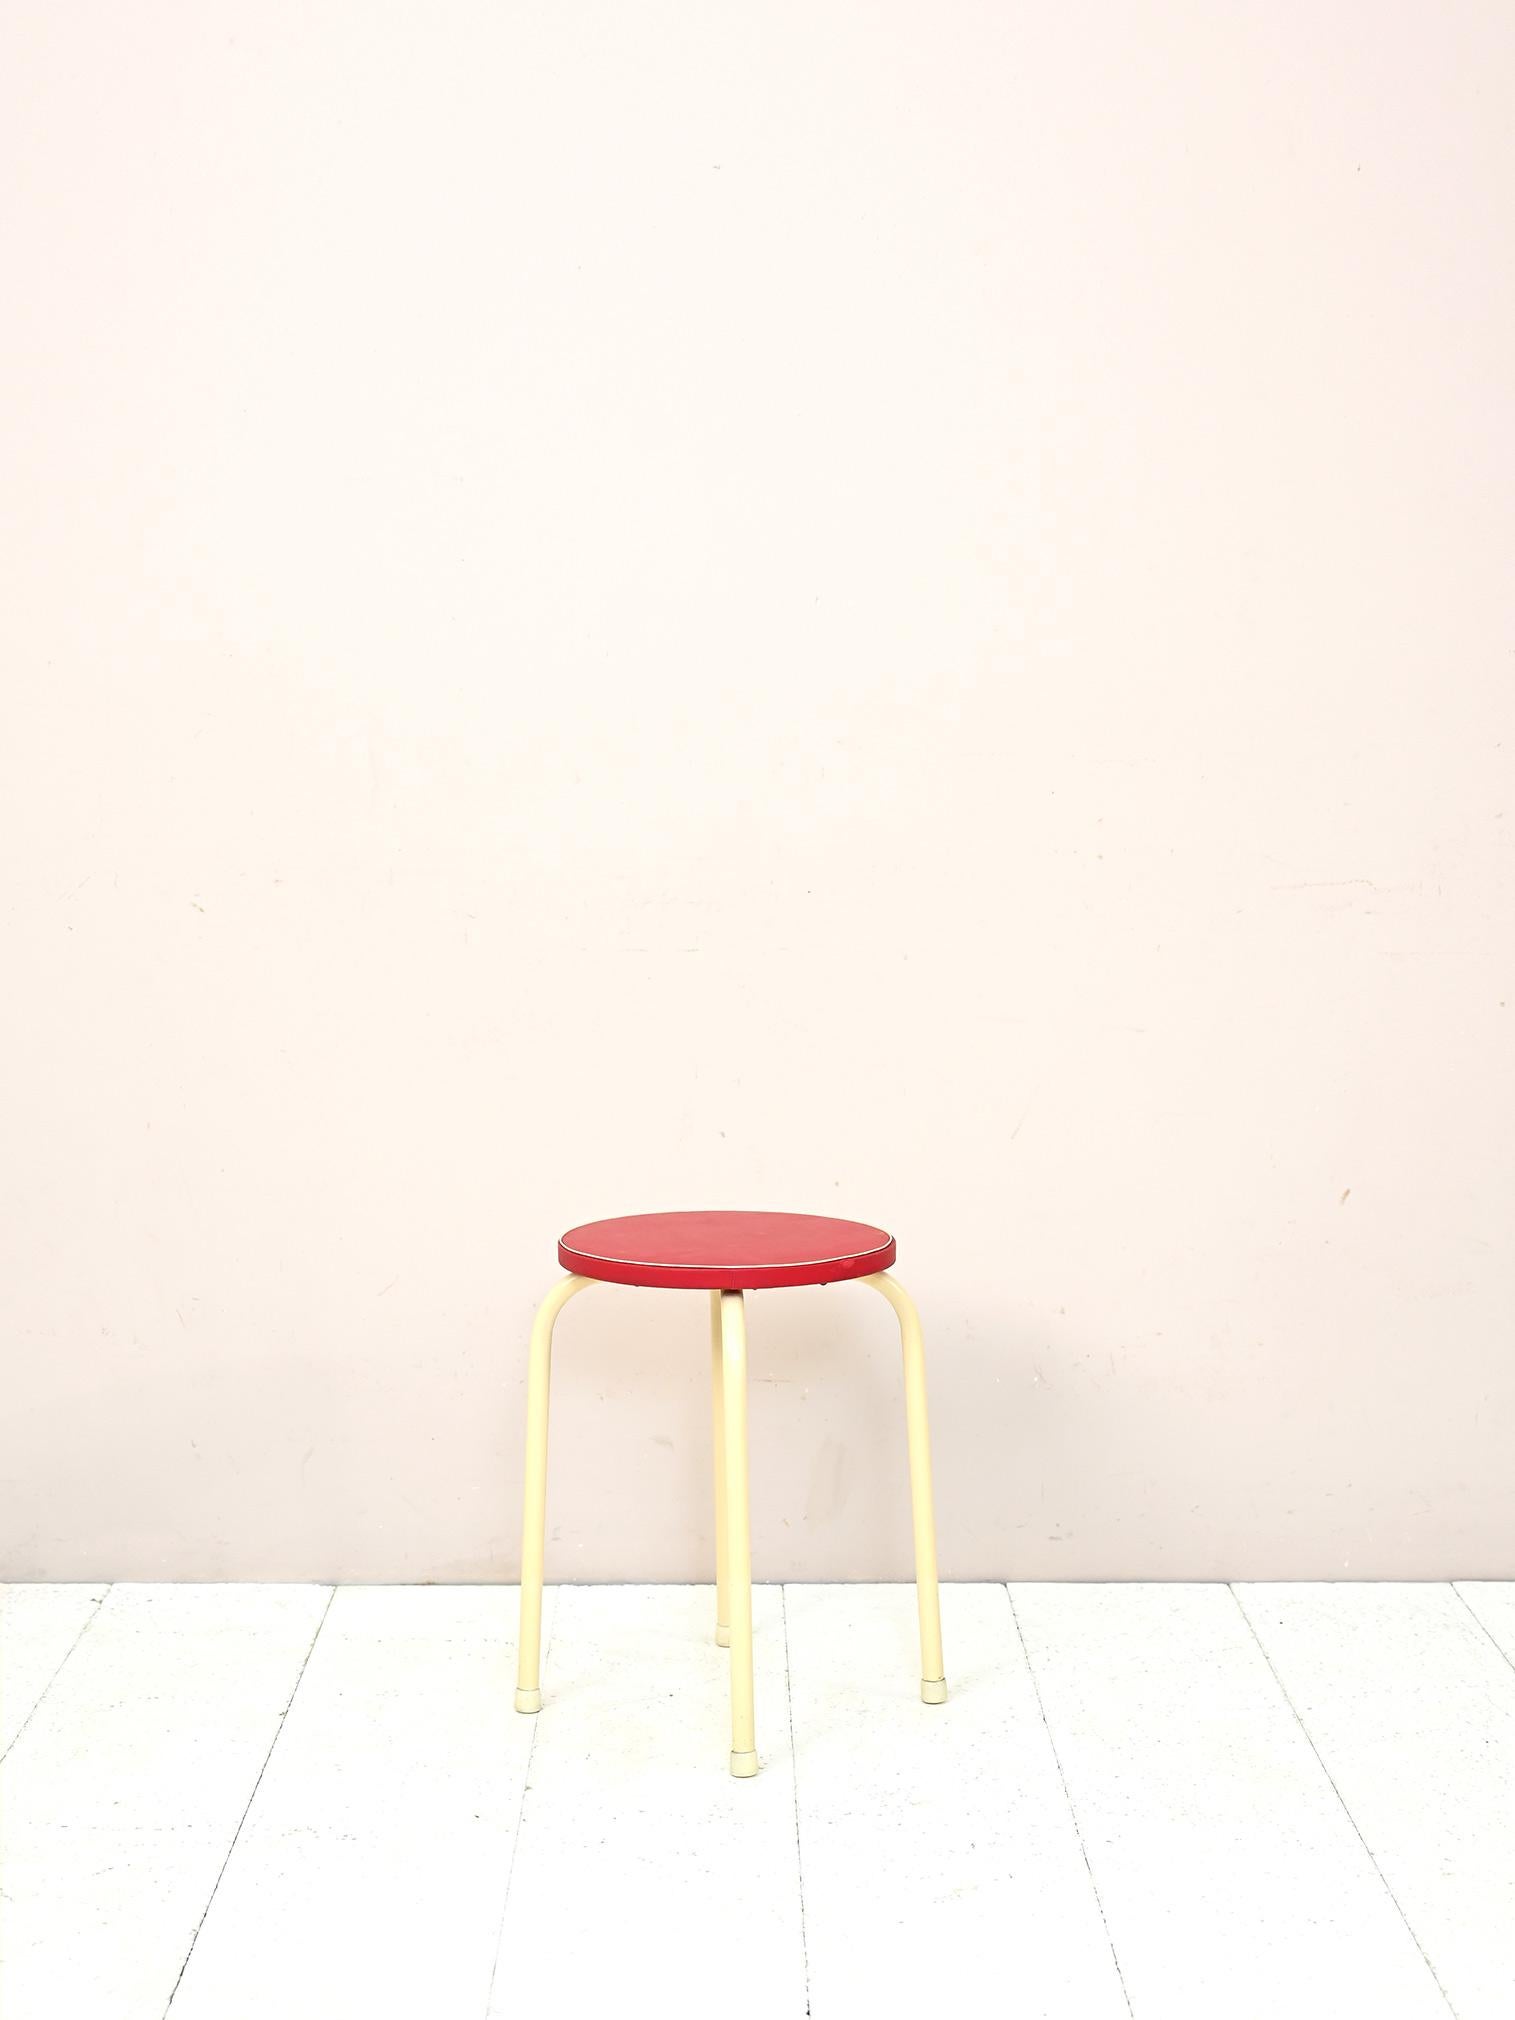 Skandinavischer Hocker aus den 1960er Jahren.

Besteht aus einem weiß lackierten Metallrohrgestell und einem gepolsterten Sitz mit rotem Kunstlederbezug.
Ein Möbelstück im Retrostil, das sowohl als Sitzgelegenheit als auch als kleiner Tisch